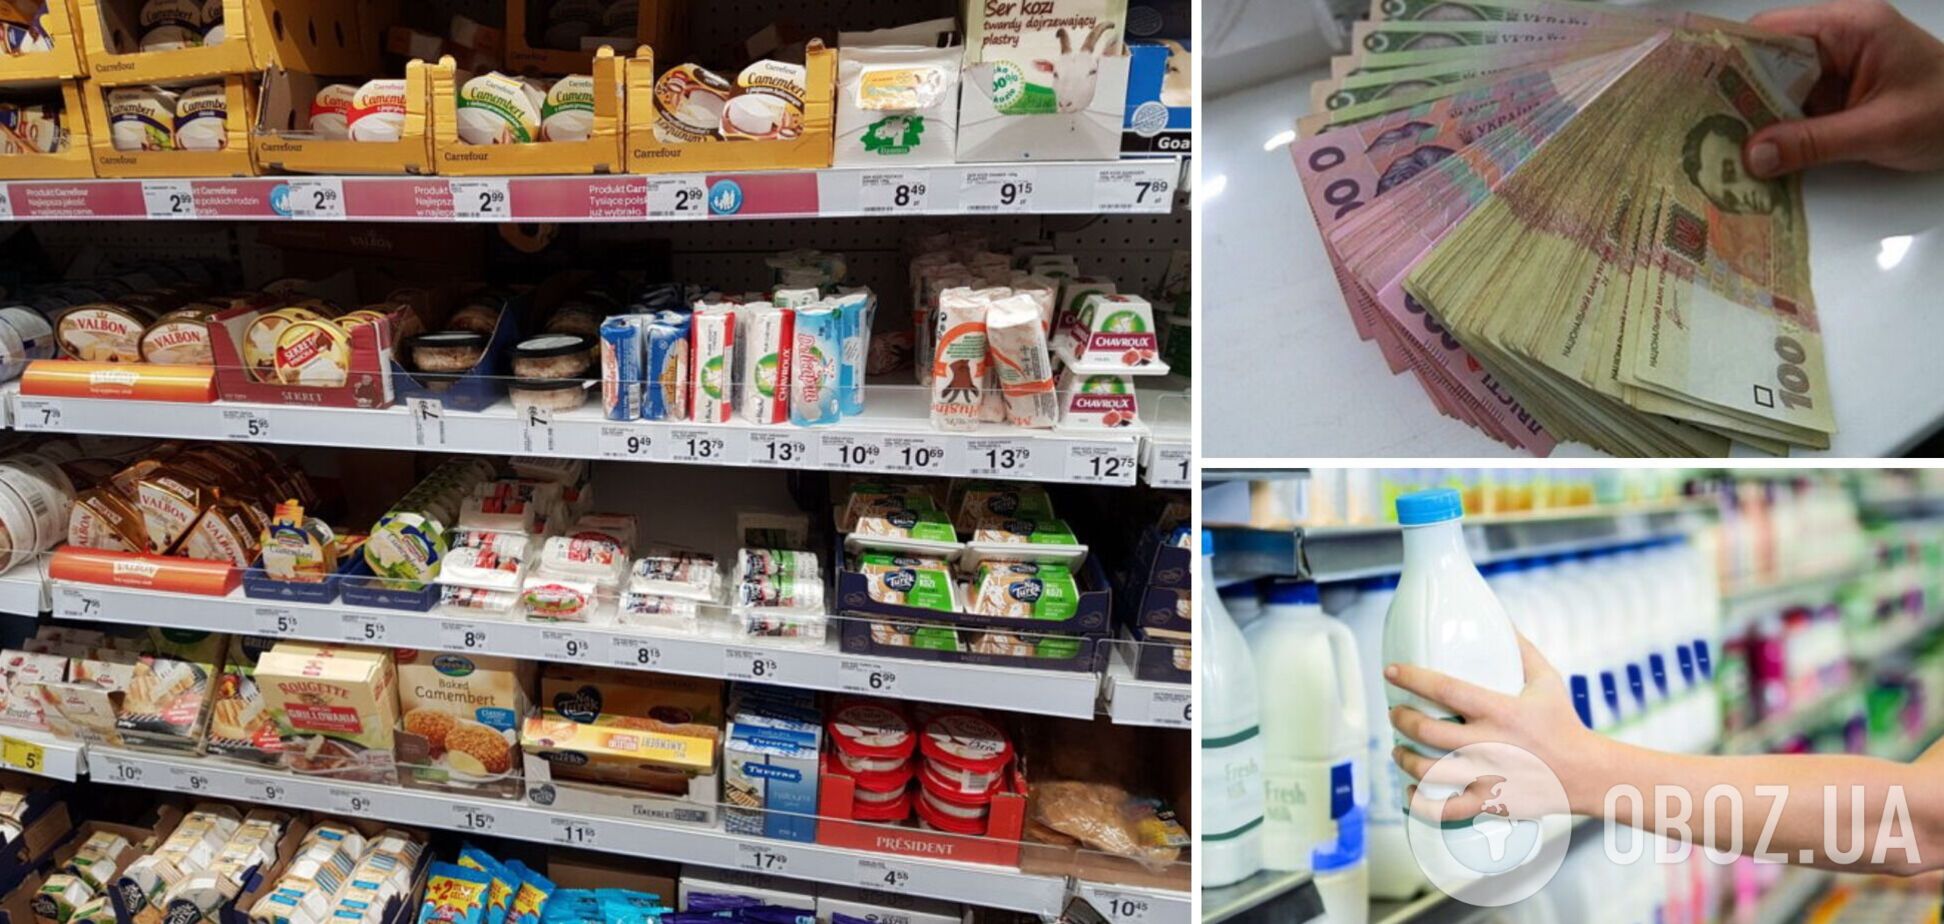 Сравнение цен на молочные продукты в Польше и Украине